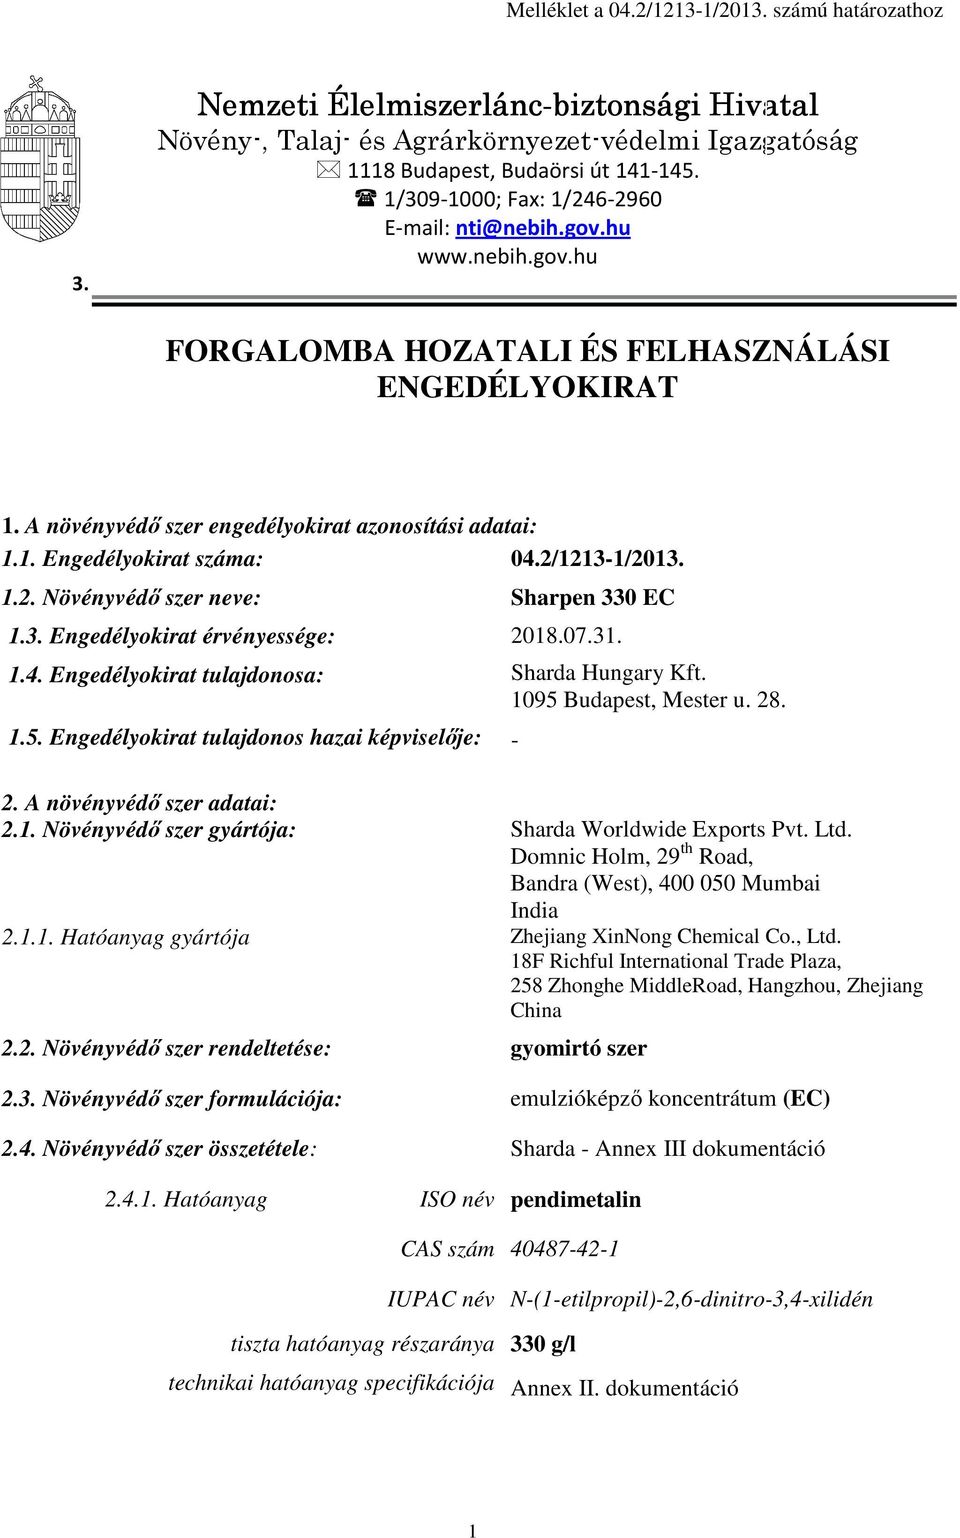 2/1213-1/2013. 1.2. Növényvédő szer neve: Sharpen 330 EC 1.3. Engedélyokirat érvényessége: 2018.07.31. 1.4. Engedélyokirat tulajdonosa: Sharda Hungary Kft. 1095 